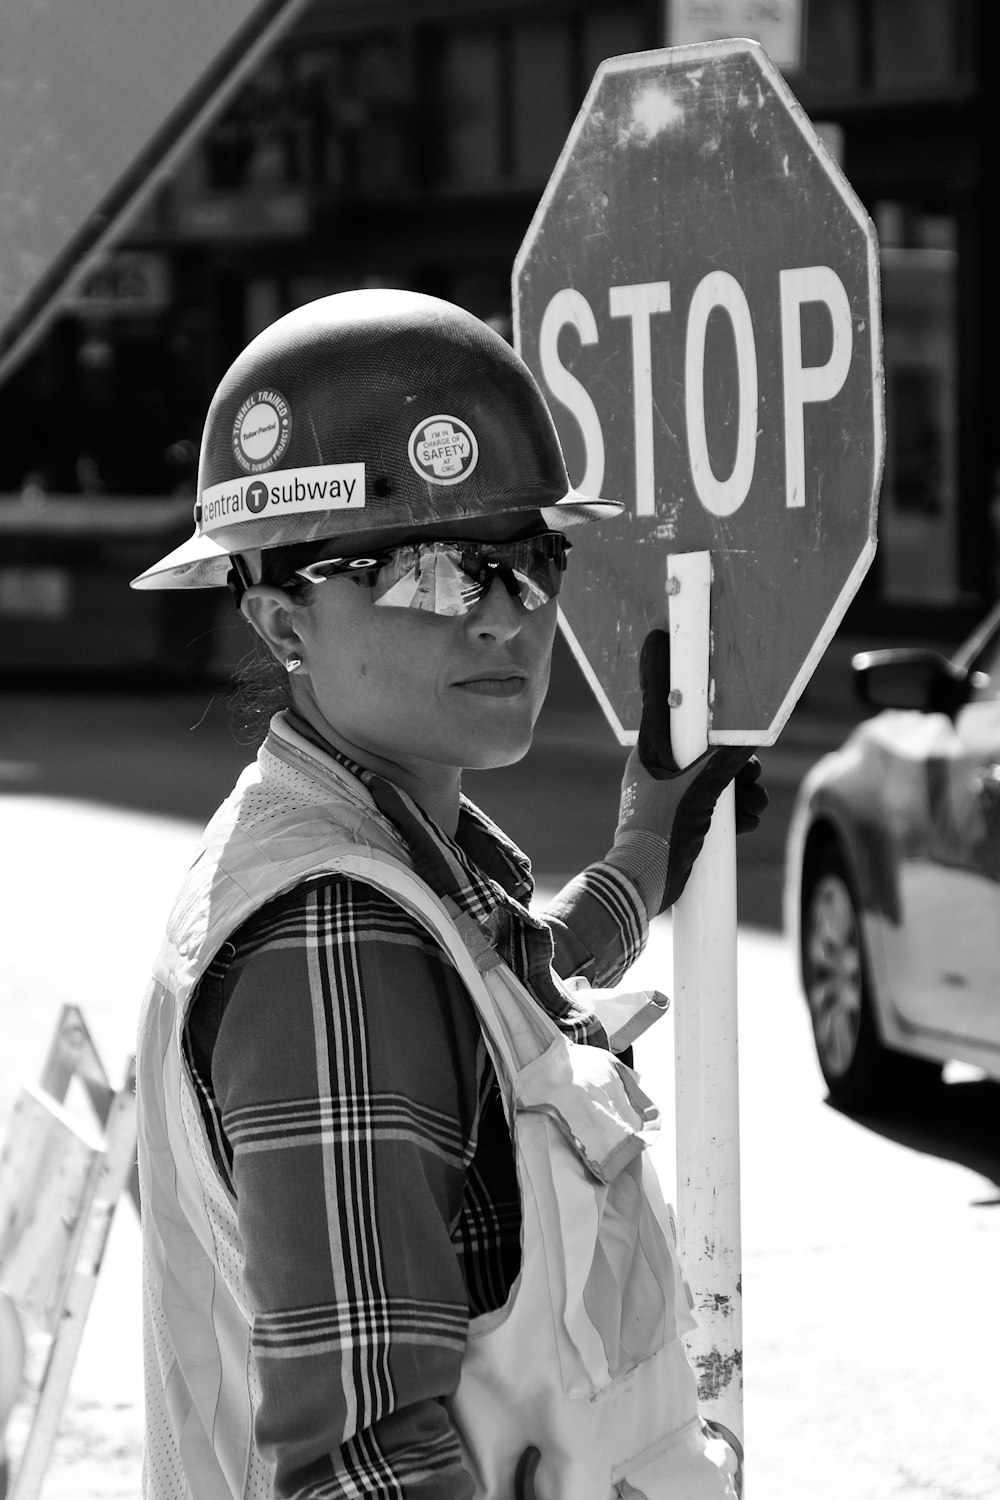 donna in piedi vicino al segnale di stop